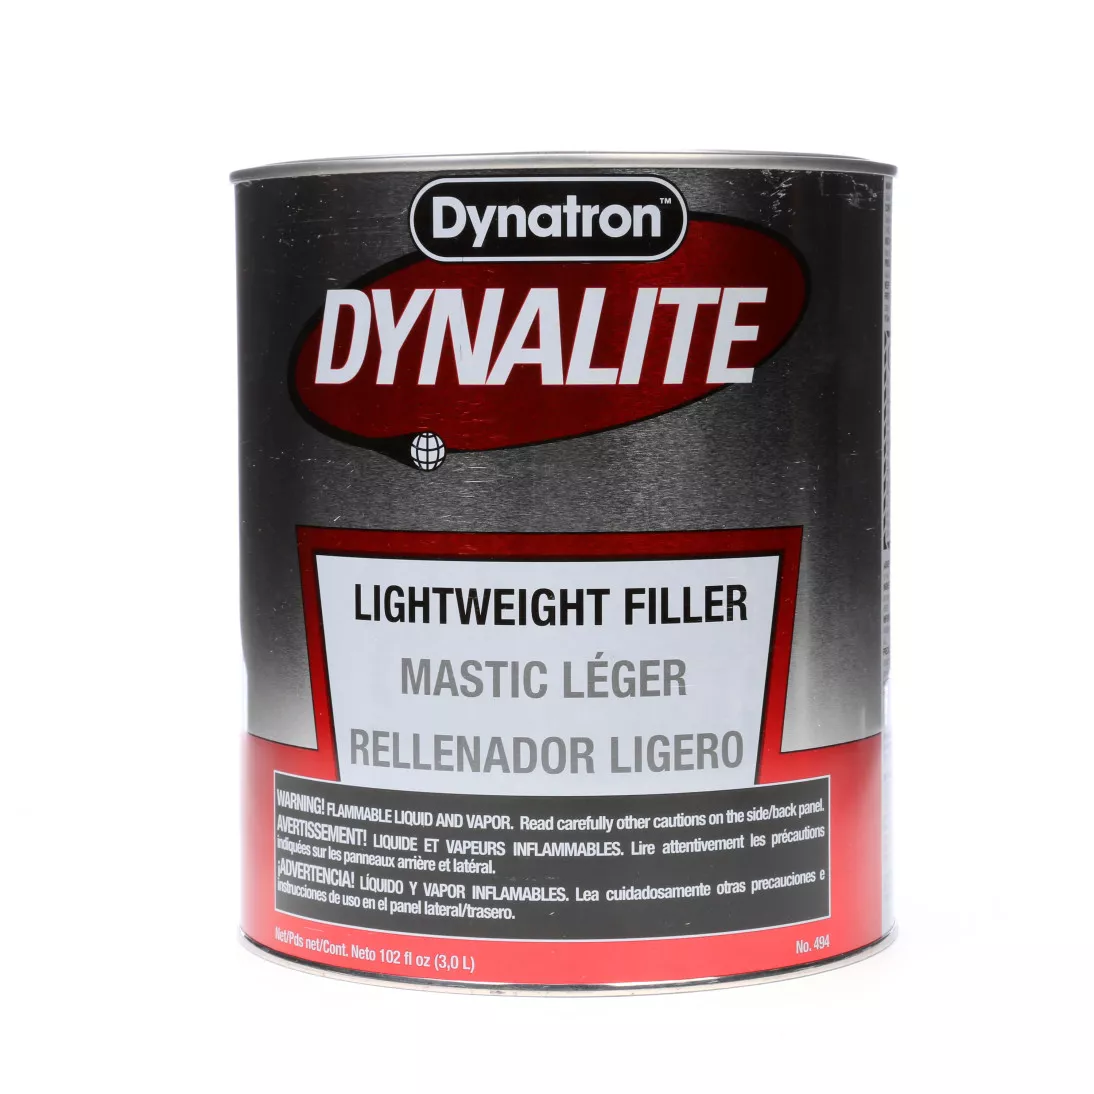 Dynatron™ Dynalite™ Body Filler, 494, 1 gal, 4 per case